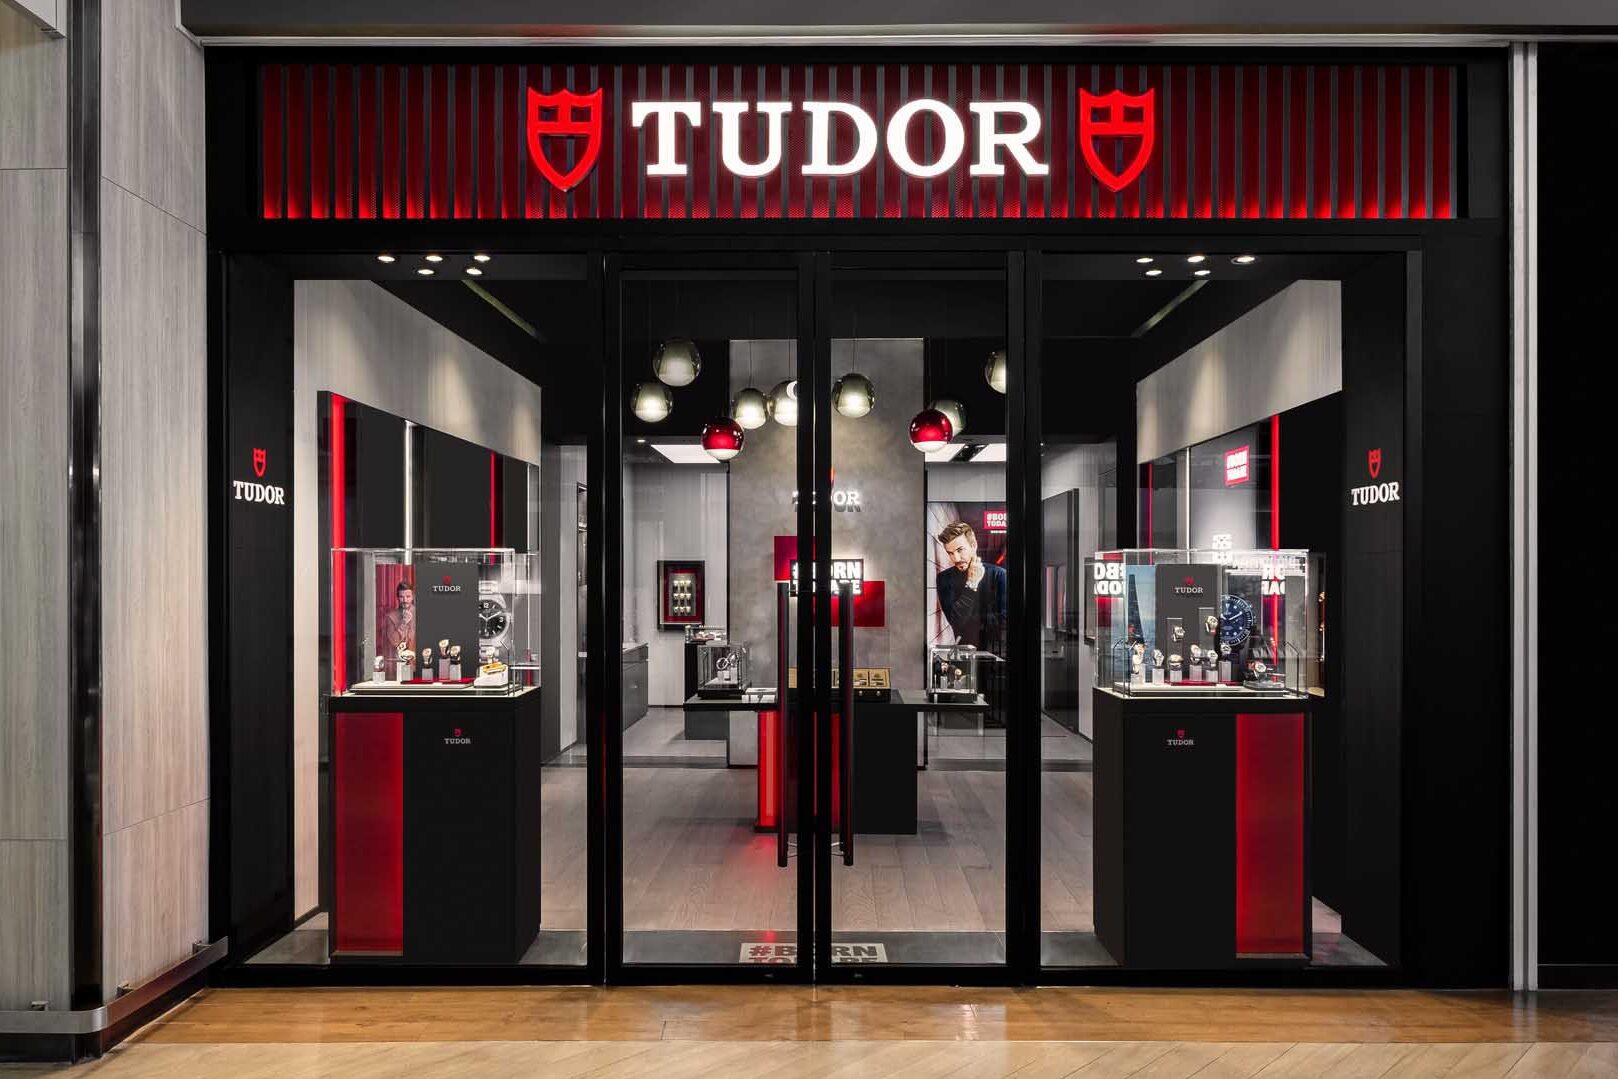 Tudor เปิดตัวบูติกใหม่ที่เมกา บางนา